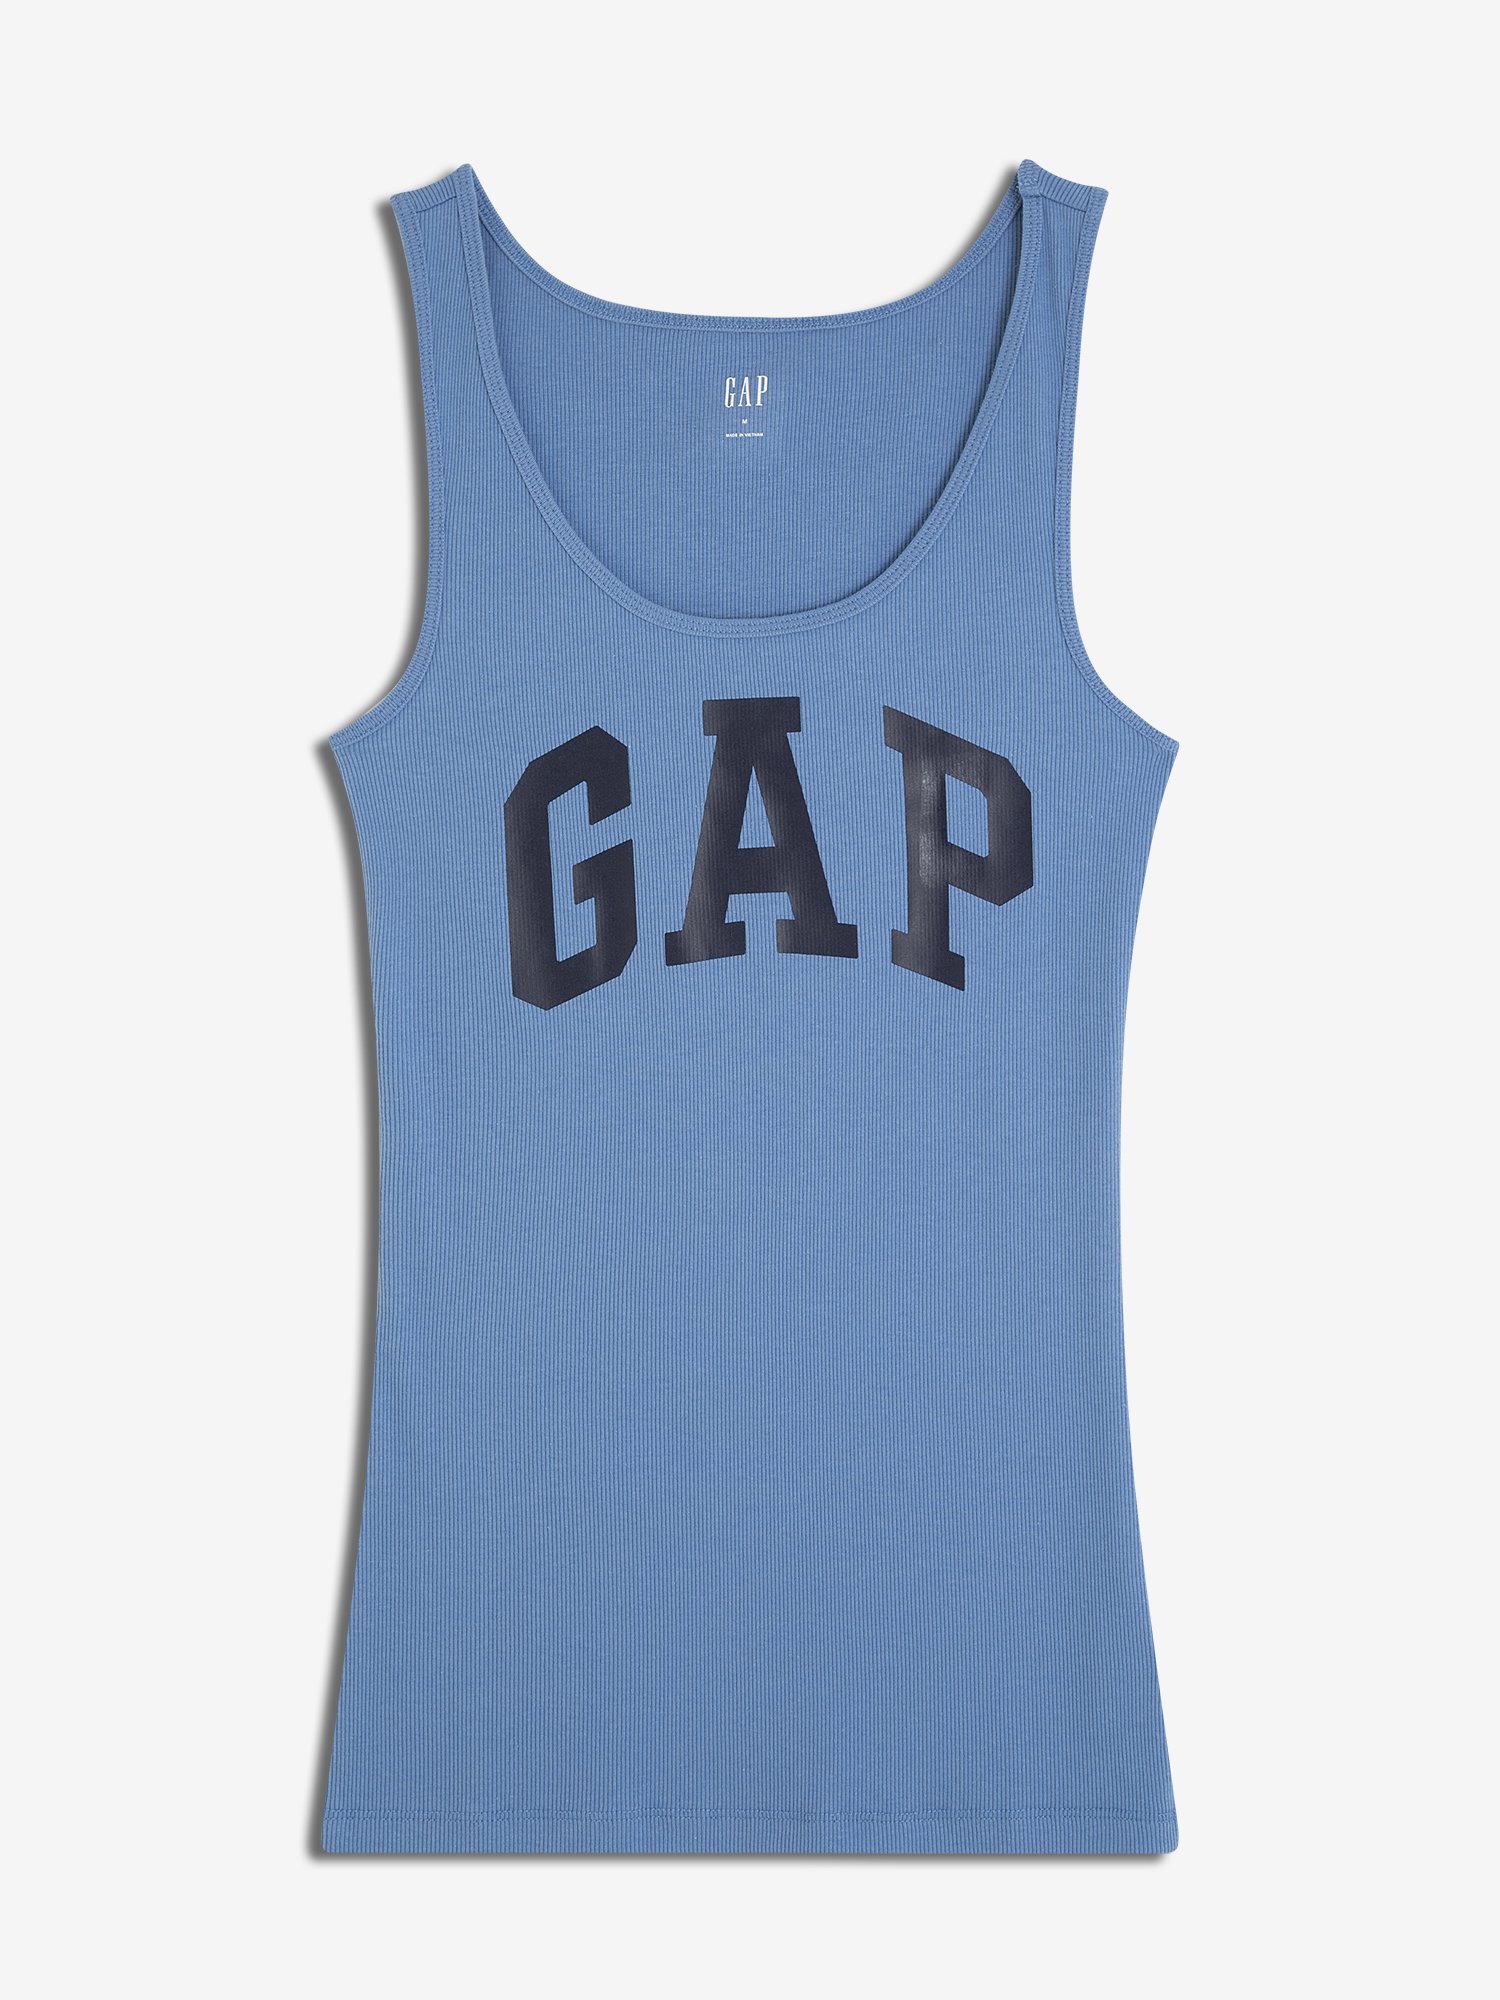 Kadın Gap Logo Atlet product image